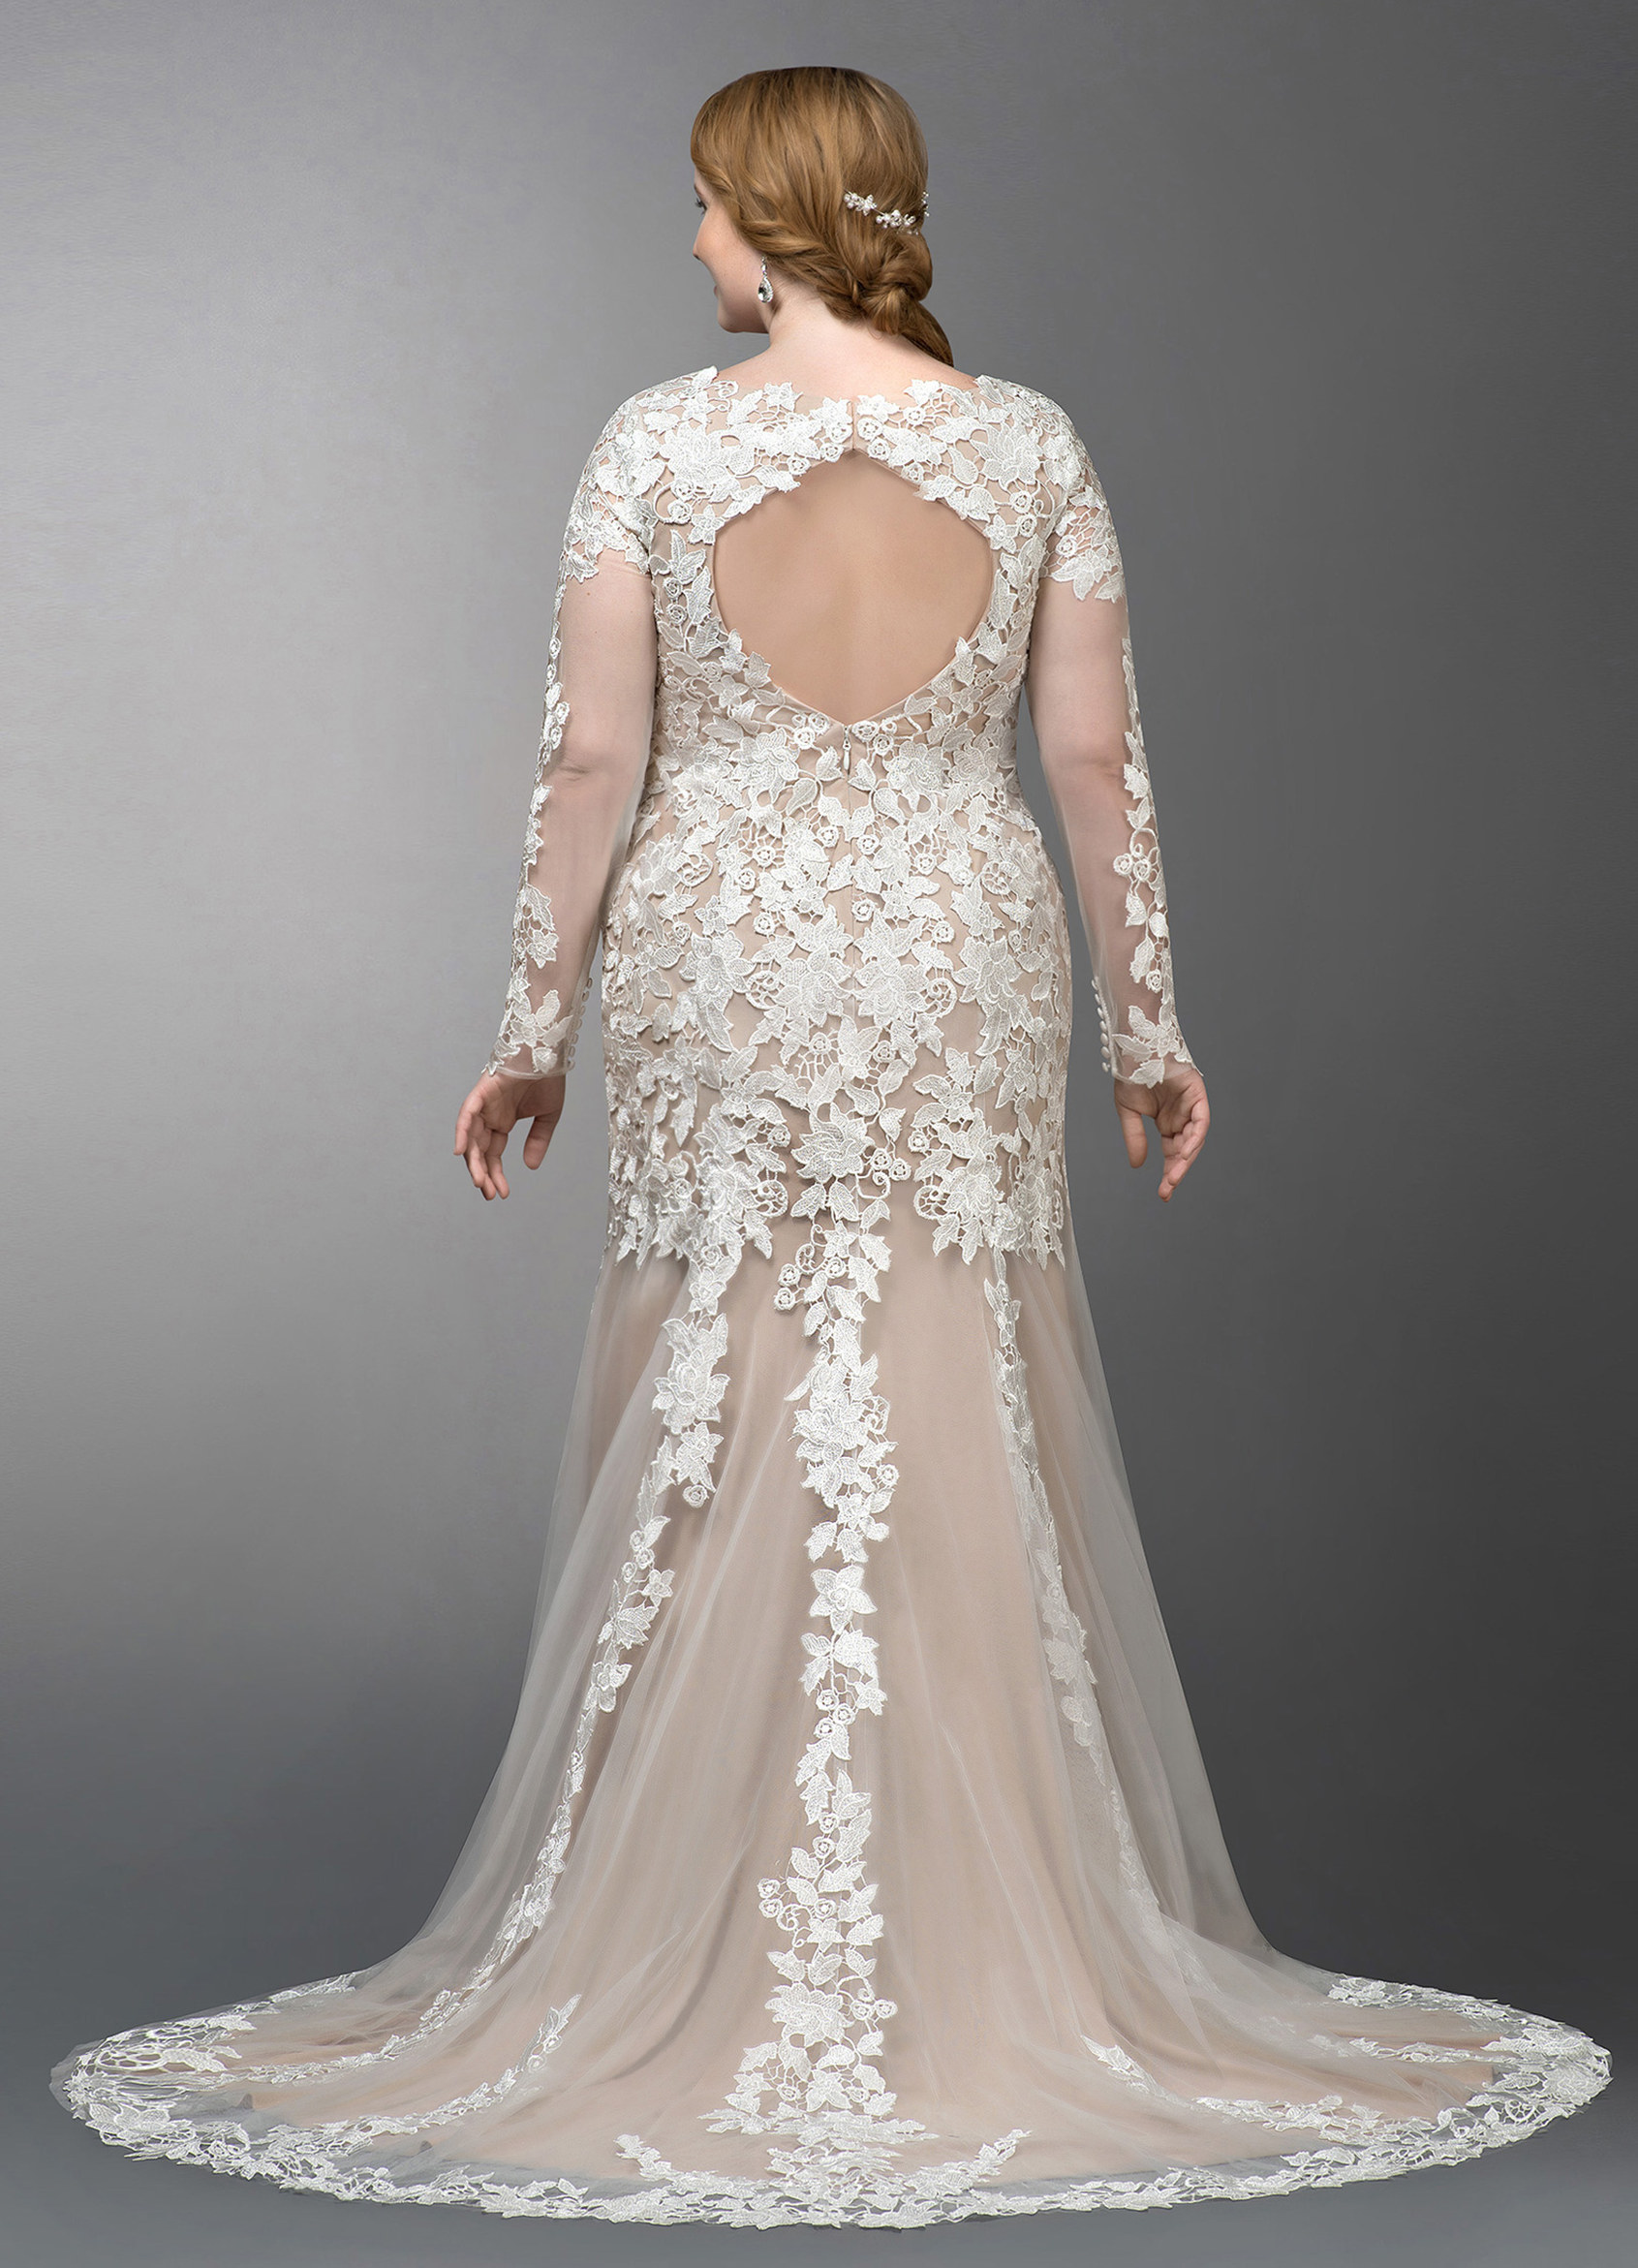 Azazie Dulce BG Wedding Dress - Diamond White/Champagne | Azazie